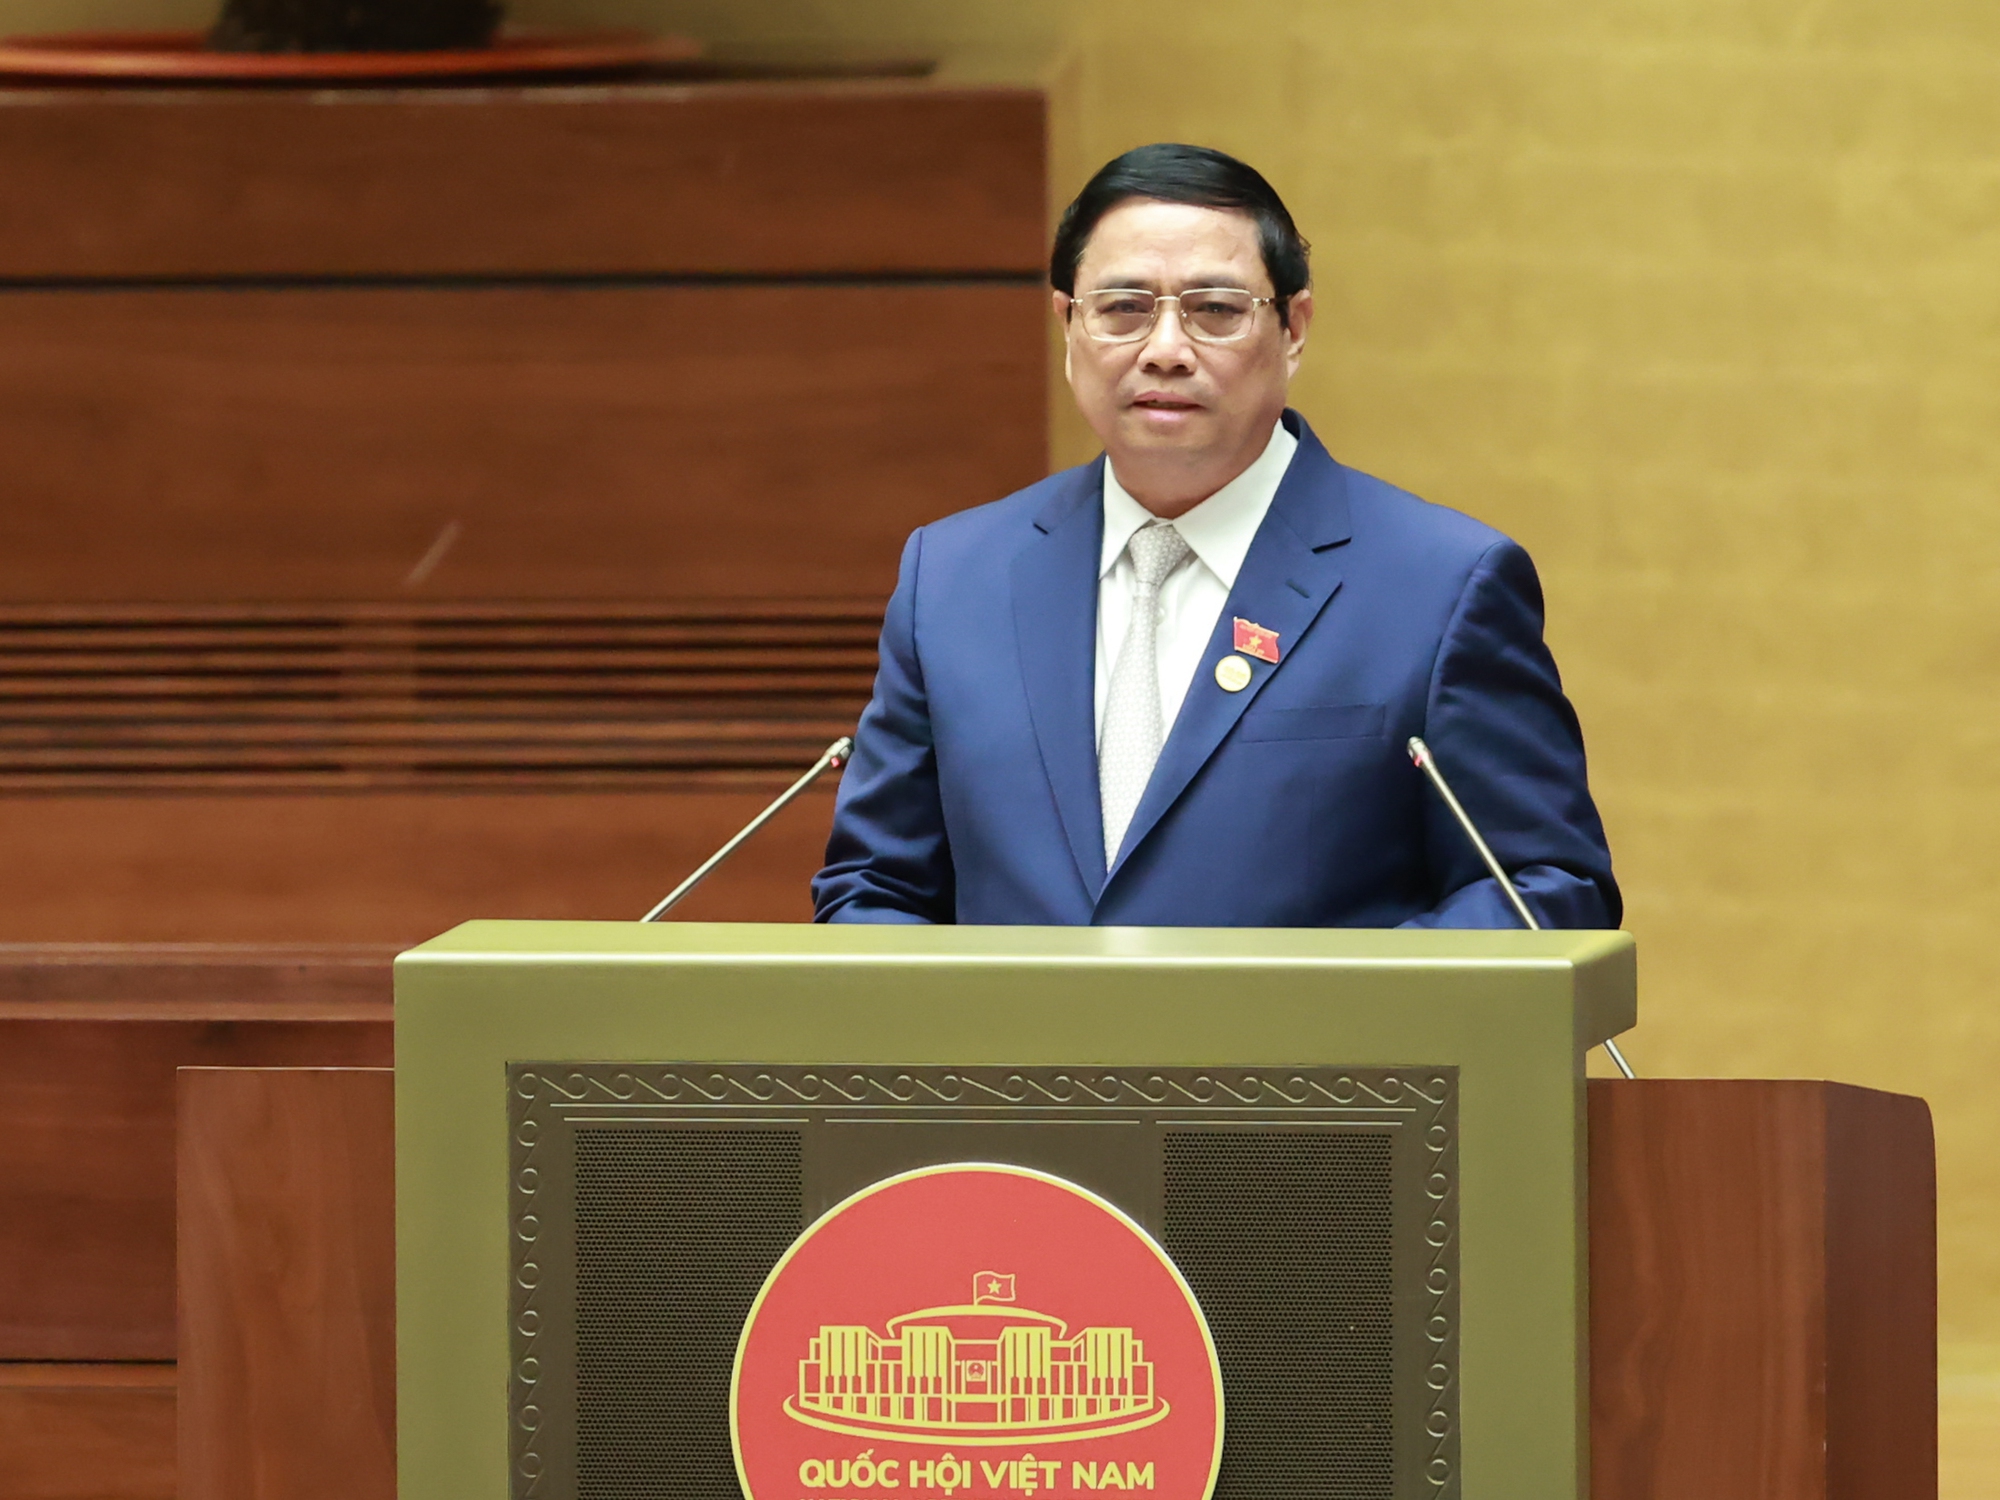 Thủ tướng Phạm Minh Chính trình bày báo cáo tại phiên khai mạc Kỳ họp thứ 6, Quốc hội khoá XV - Ảnh: VGP/Nhật Bắc